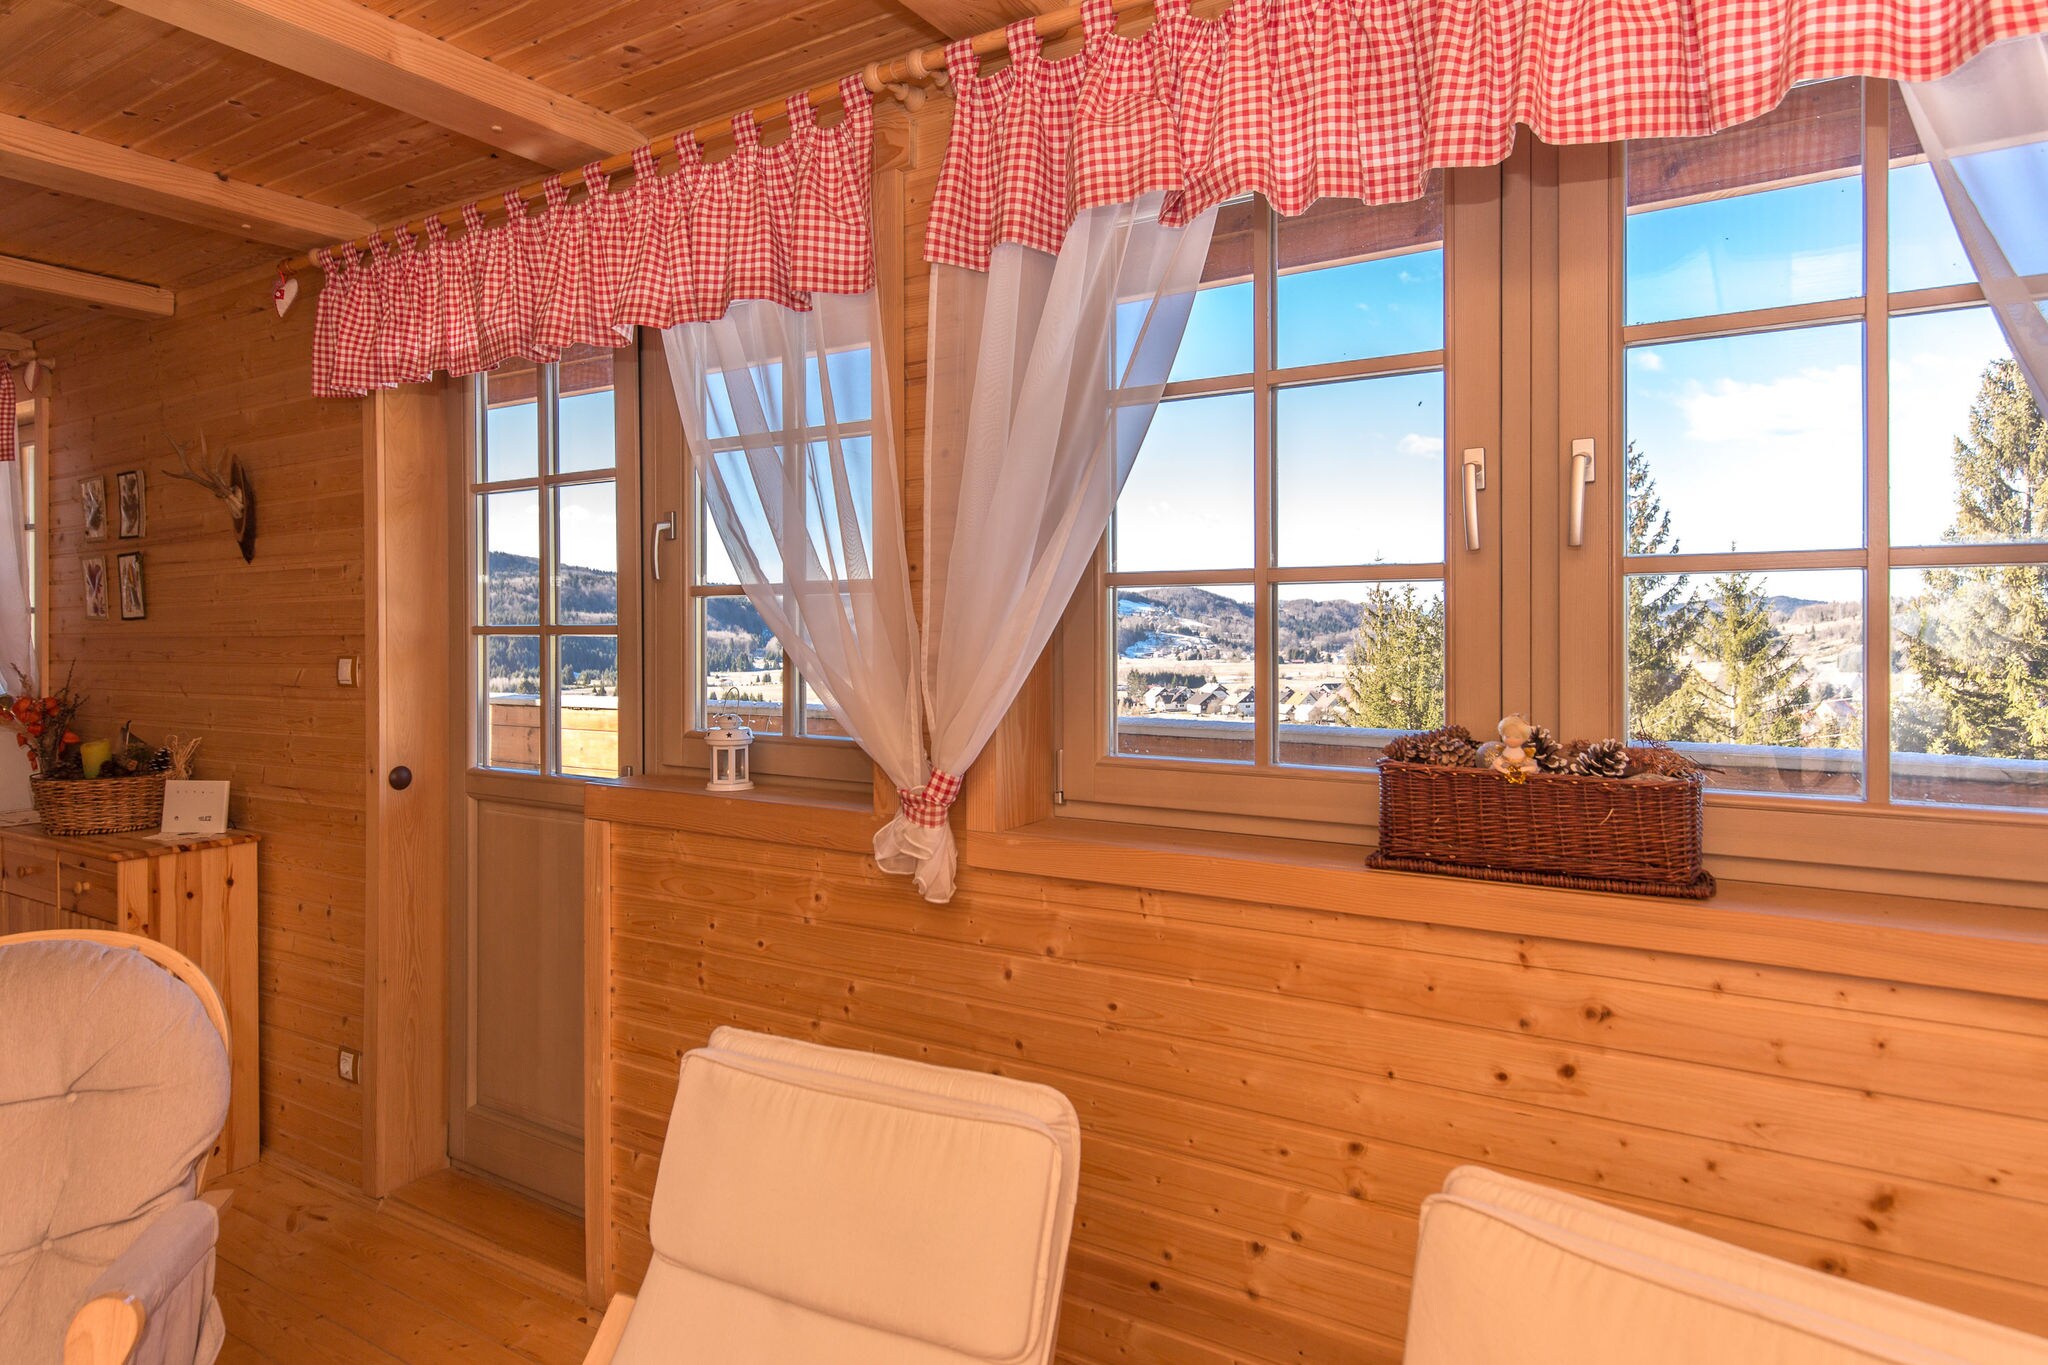 Heerlijk vakantiehuis 4 slaapkamers mooi panoramisch uitzicht taverne open haard